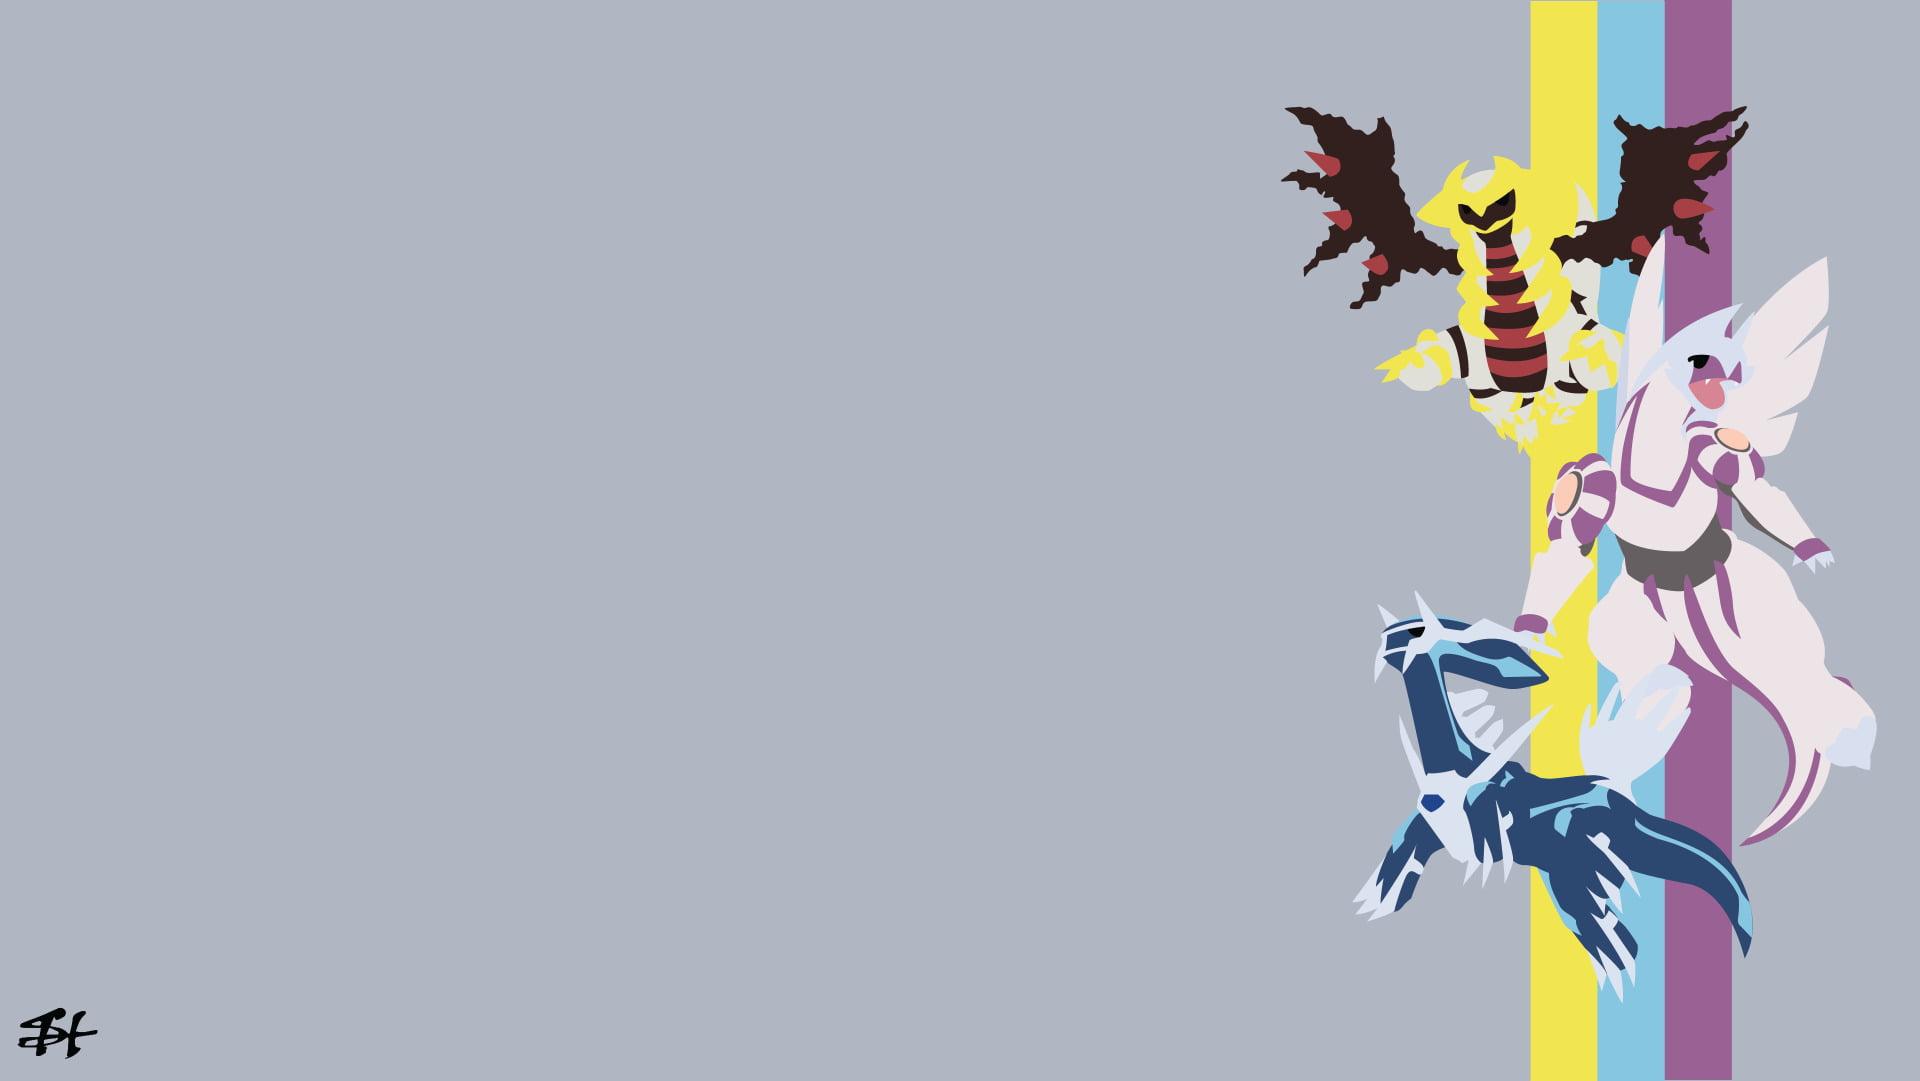 Giratina (Pokémon) 1080P, 2K, 4K, 5K HD wallpaper free download